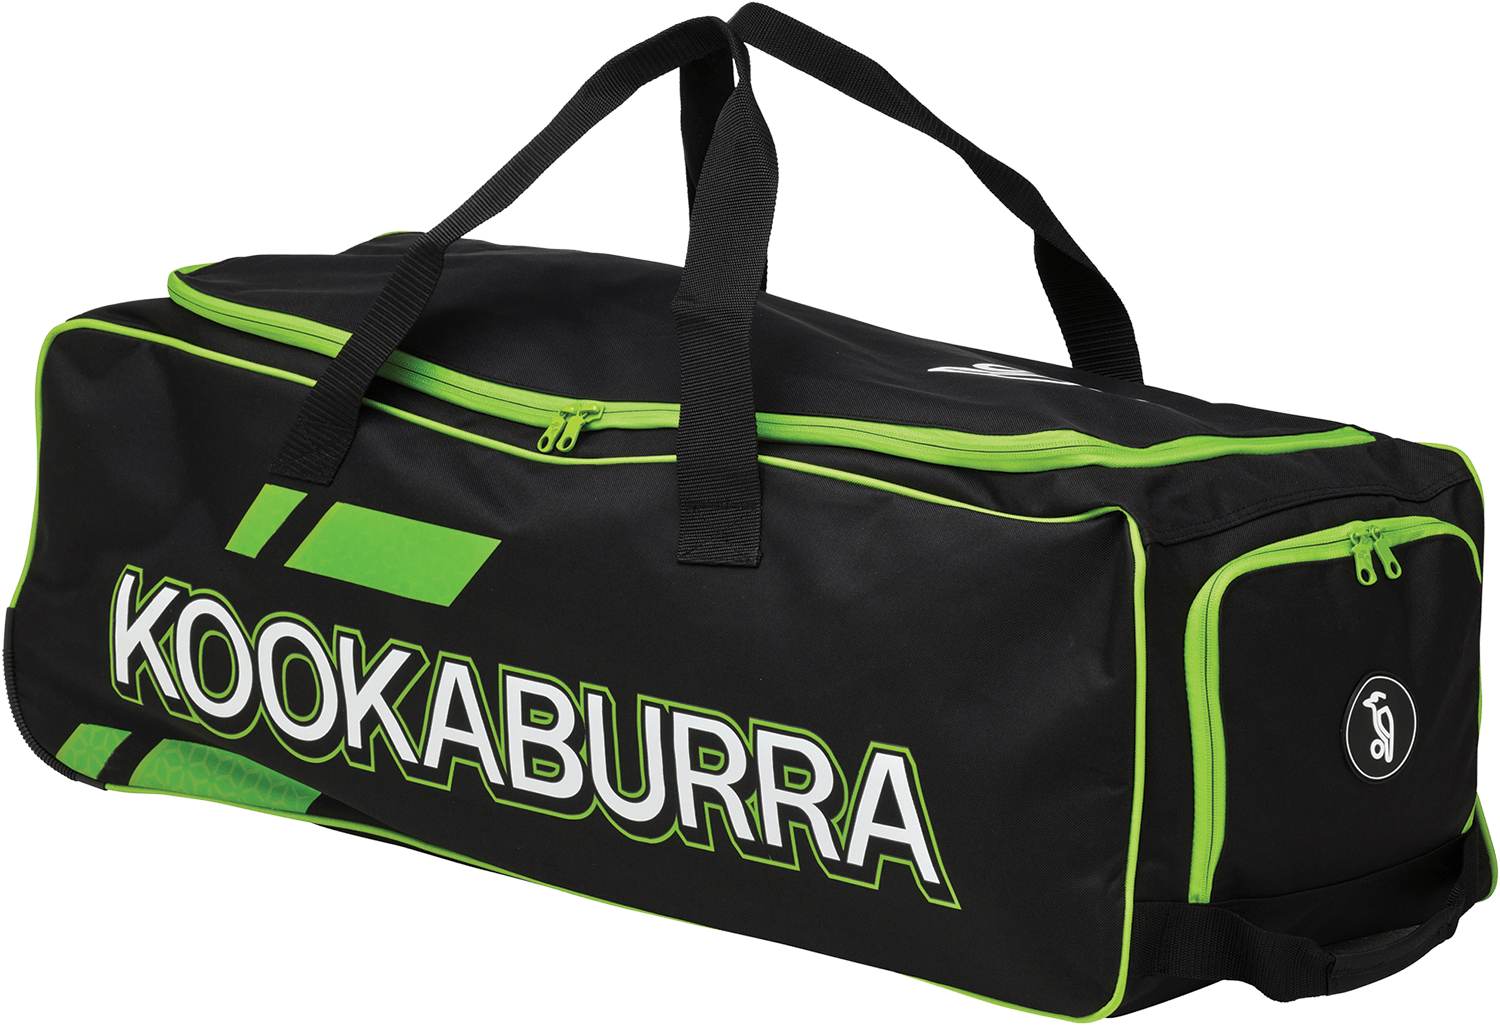 Kookaburra Cricket Bags Kookaburra 4.0 Wheelie Cricket Bag